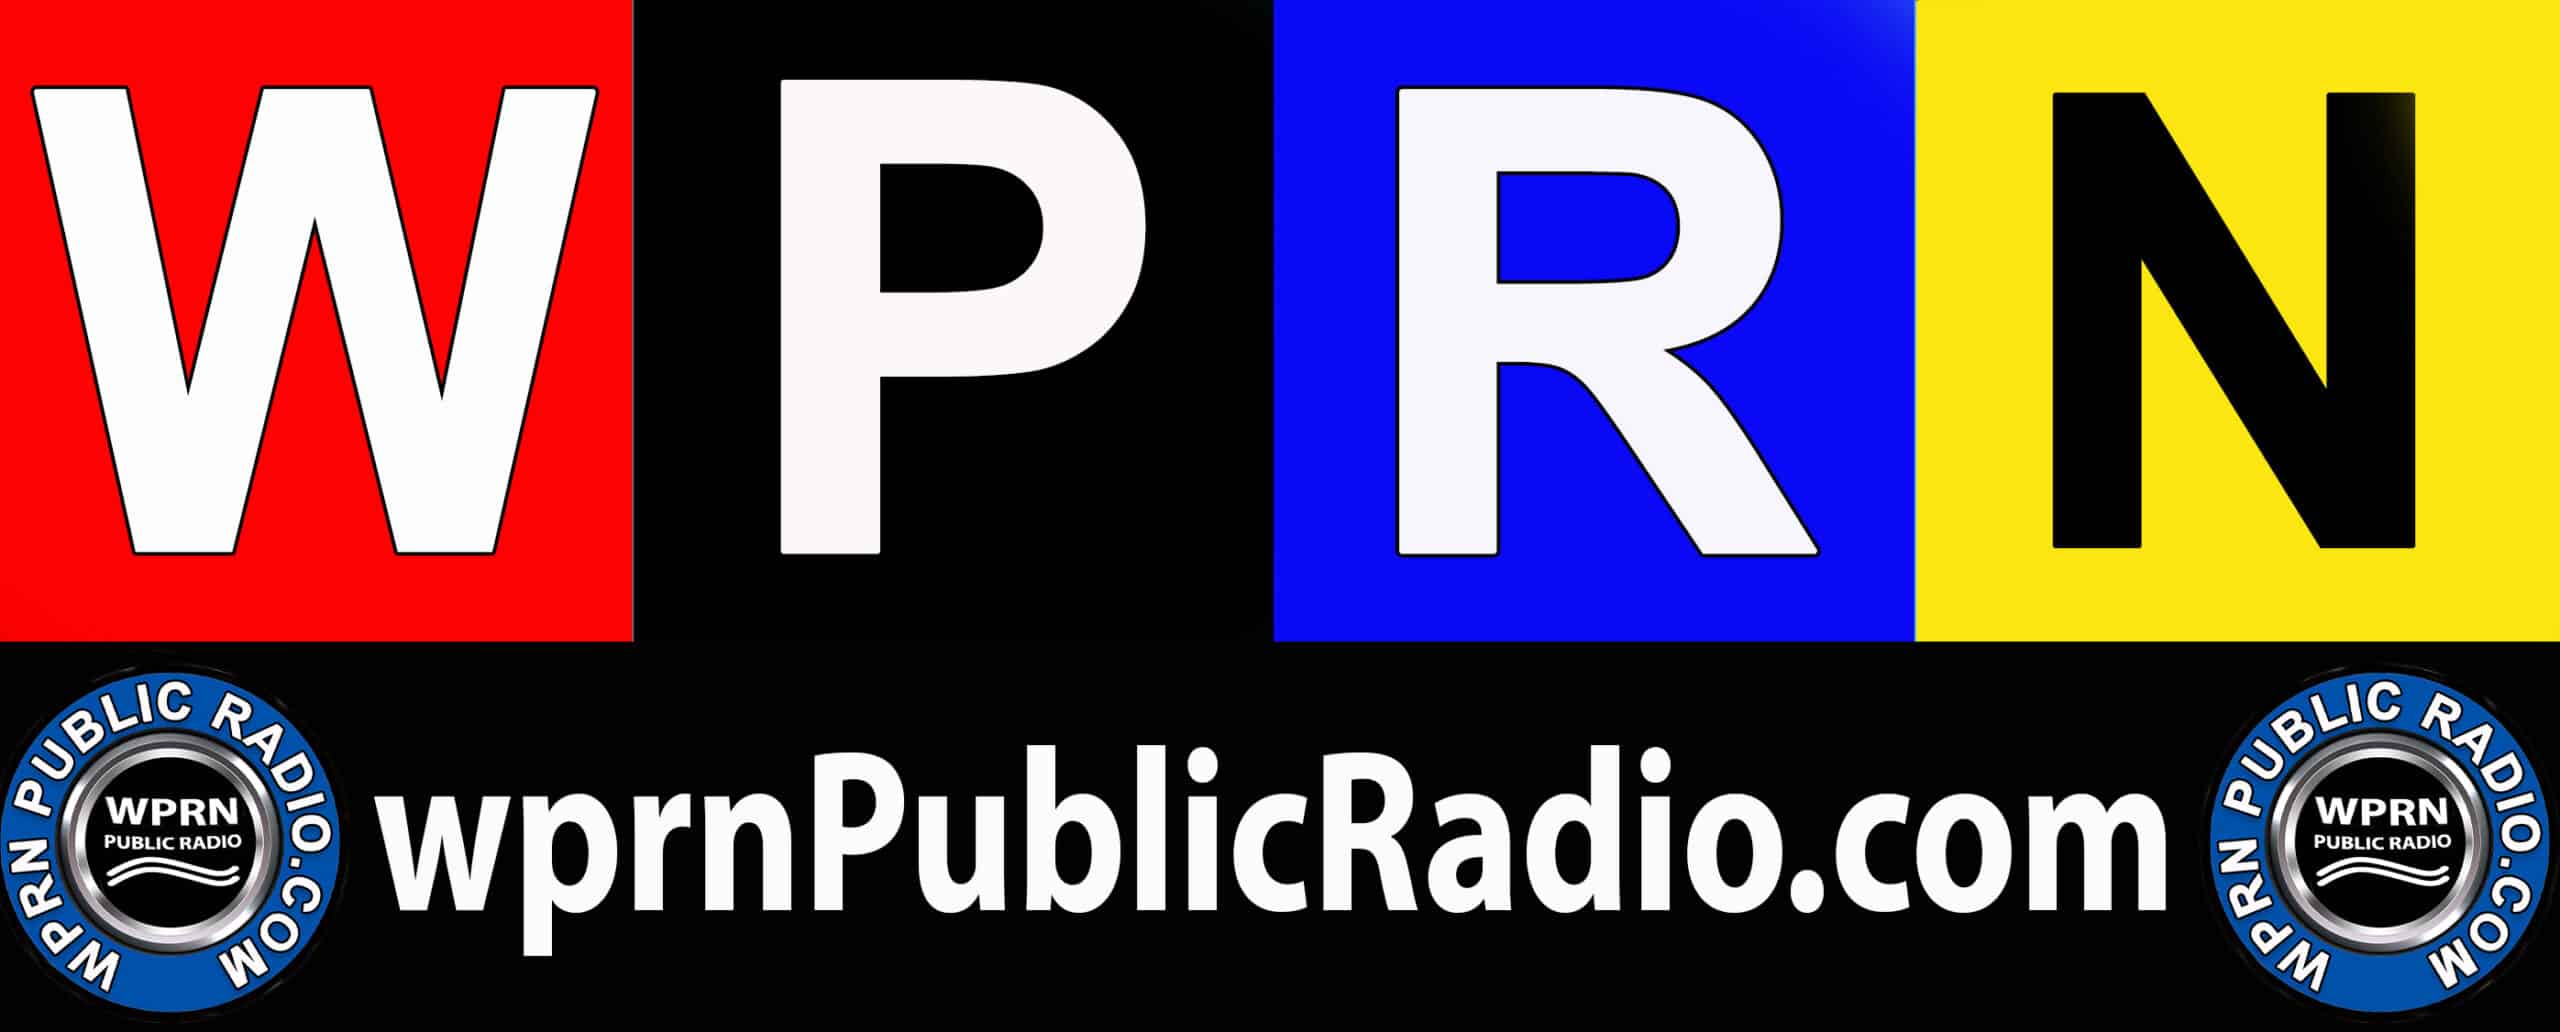 wprnPublicRadio.com